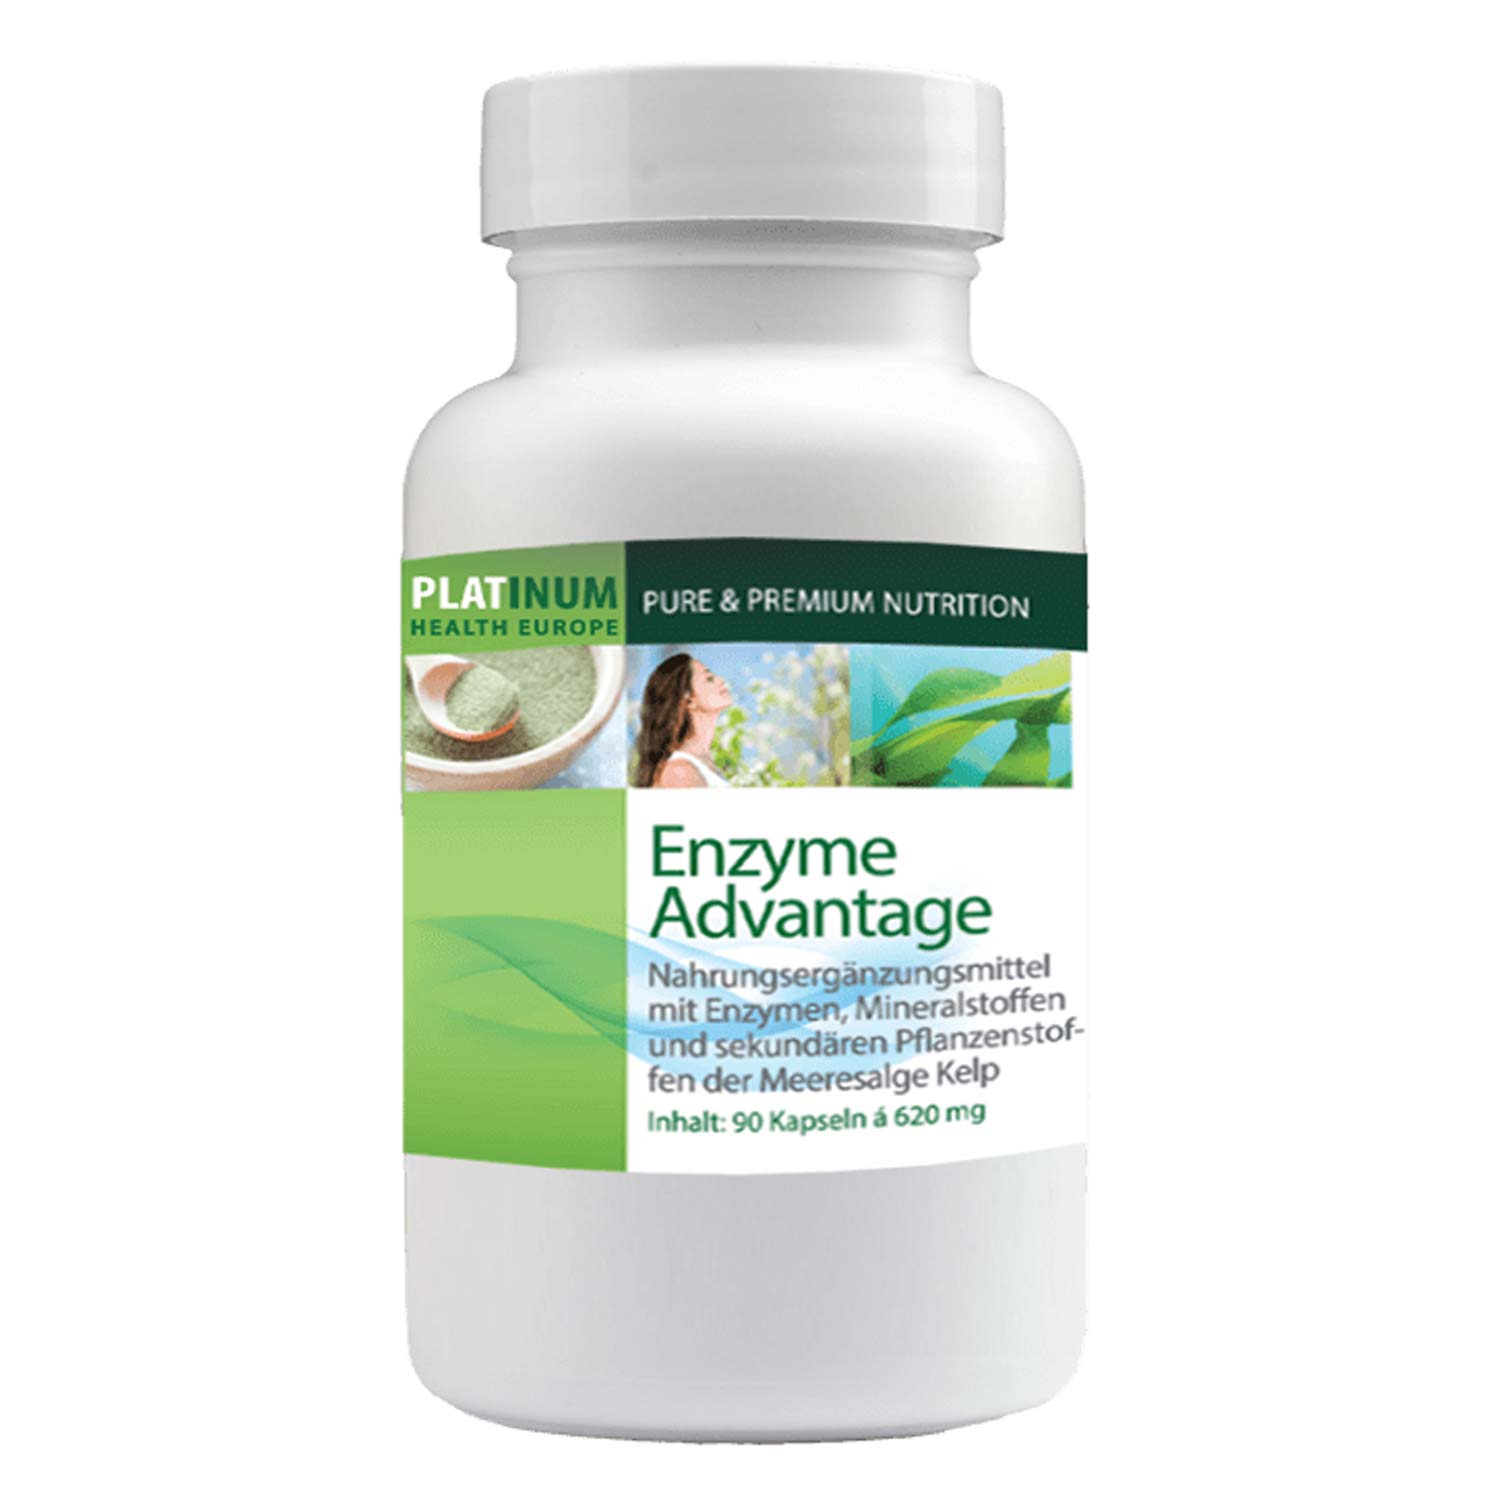 Enzyme Advantage von Platinum Health